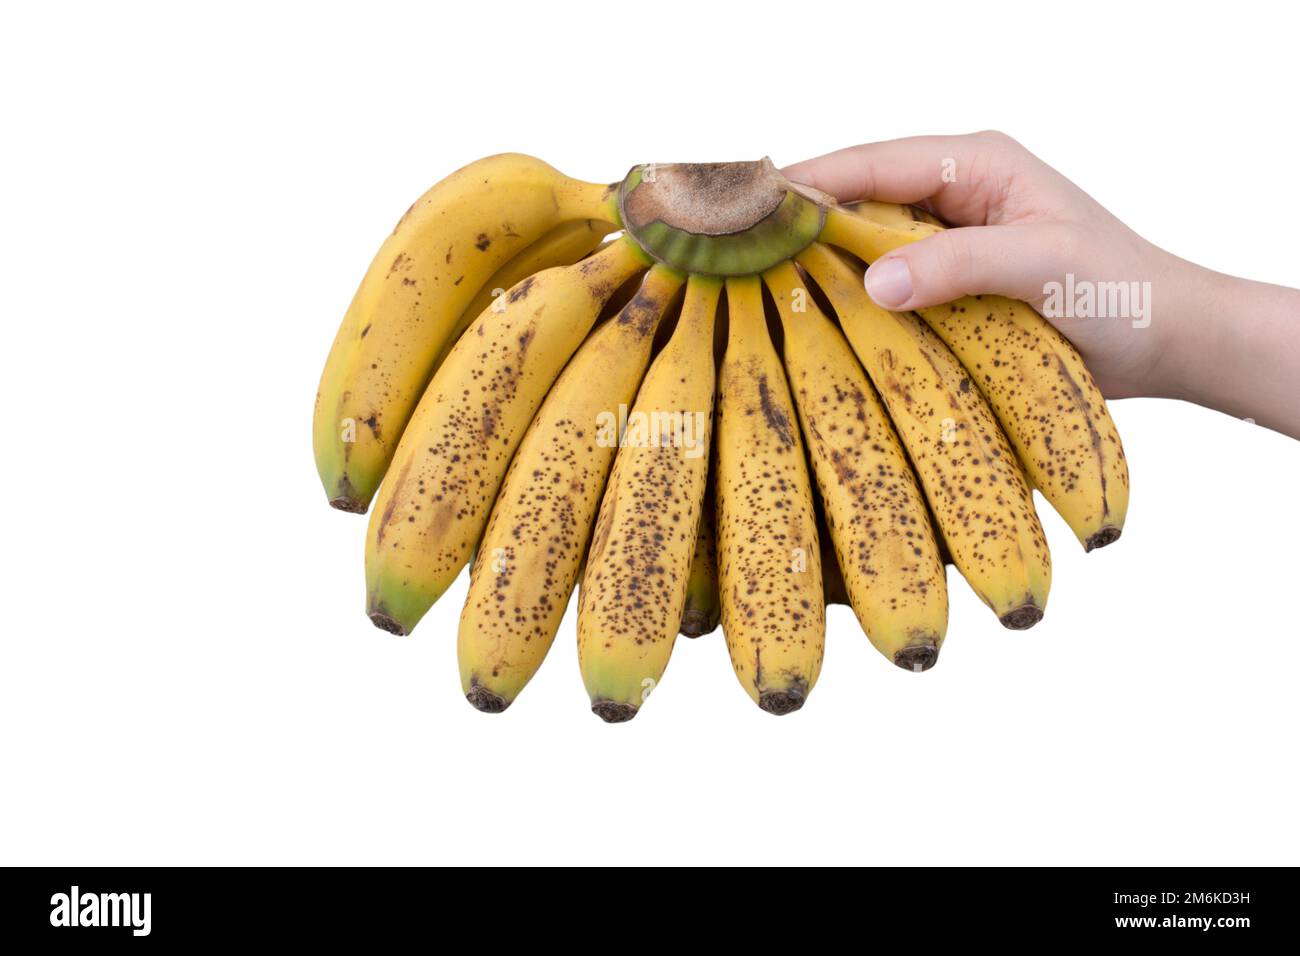 Banana picture, yellow bananas, banana on white background Stock Photo